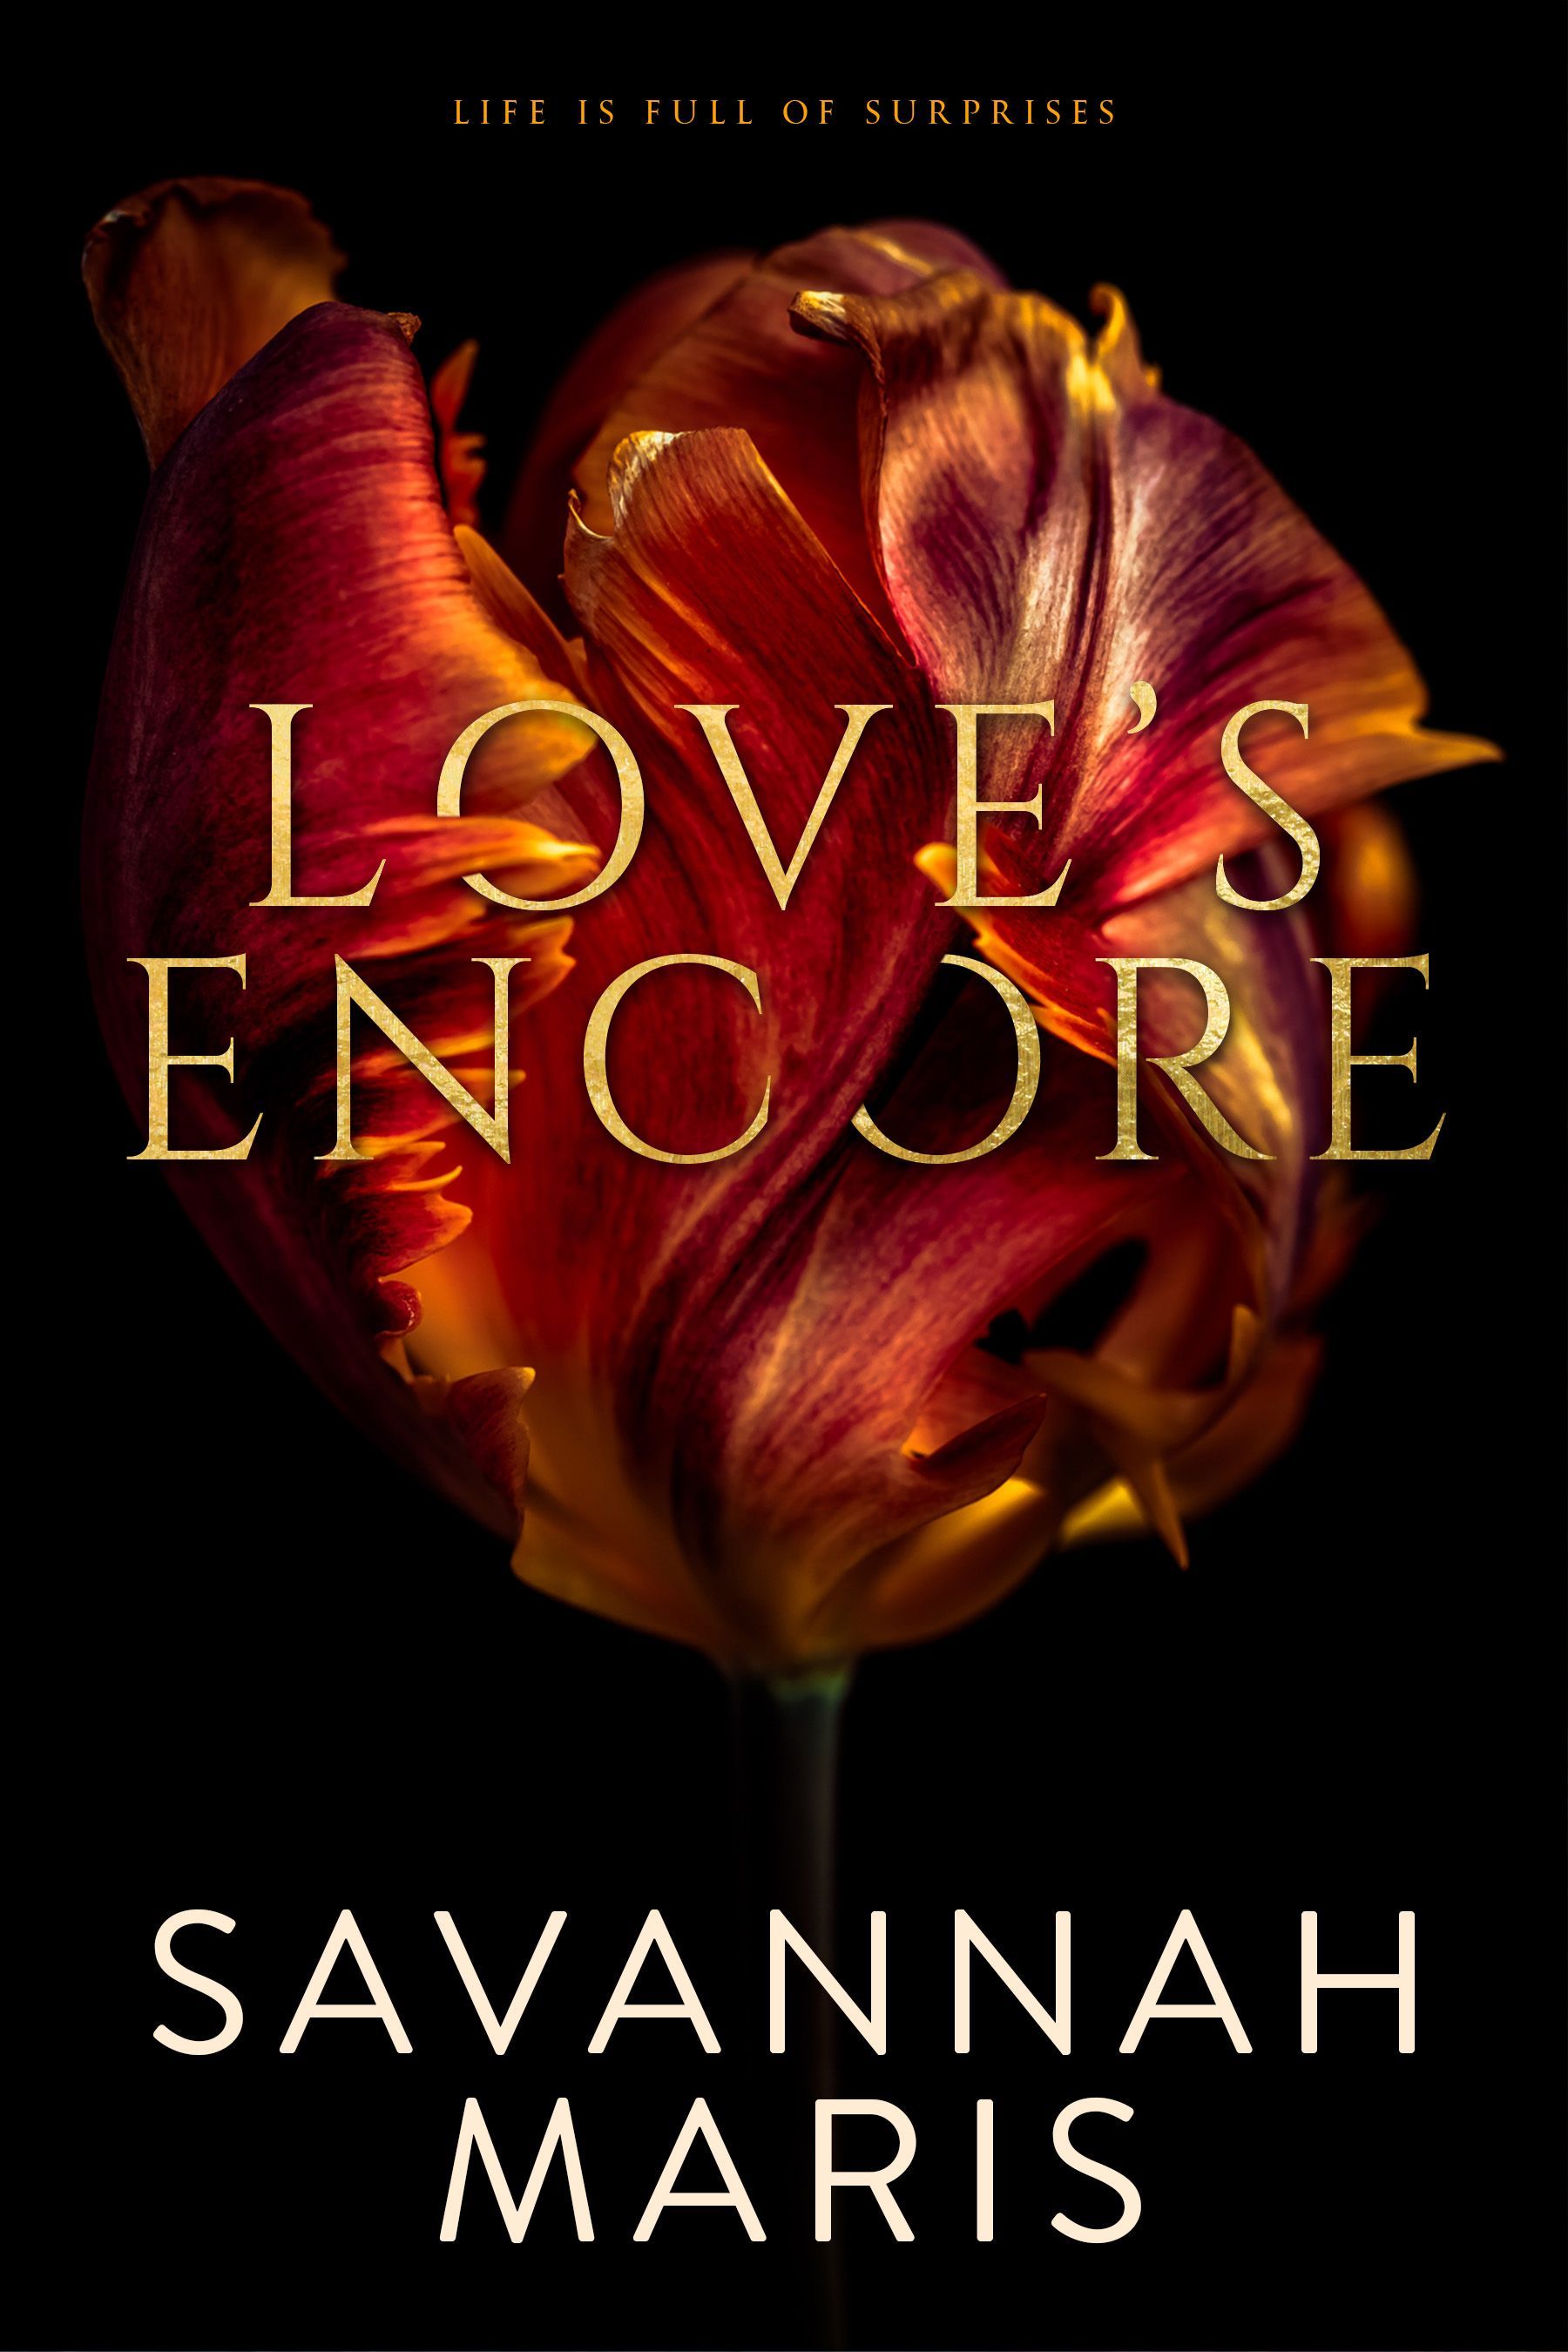 A book called Love 's Encore by Savannah Maris